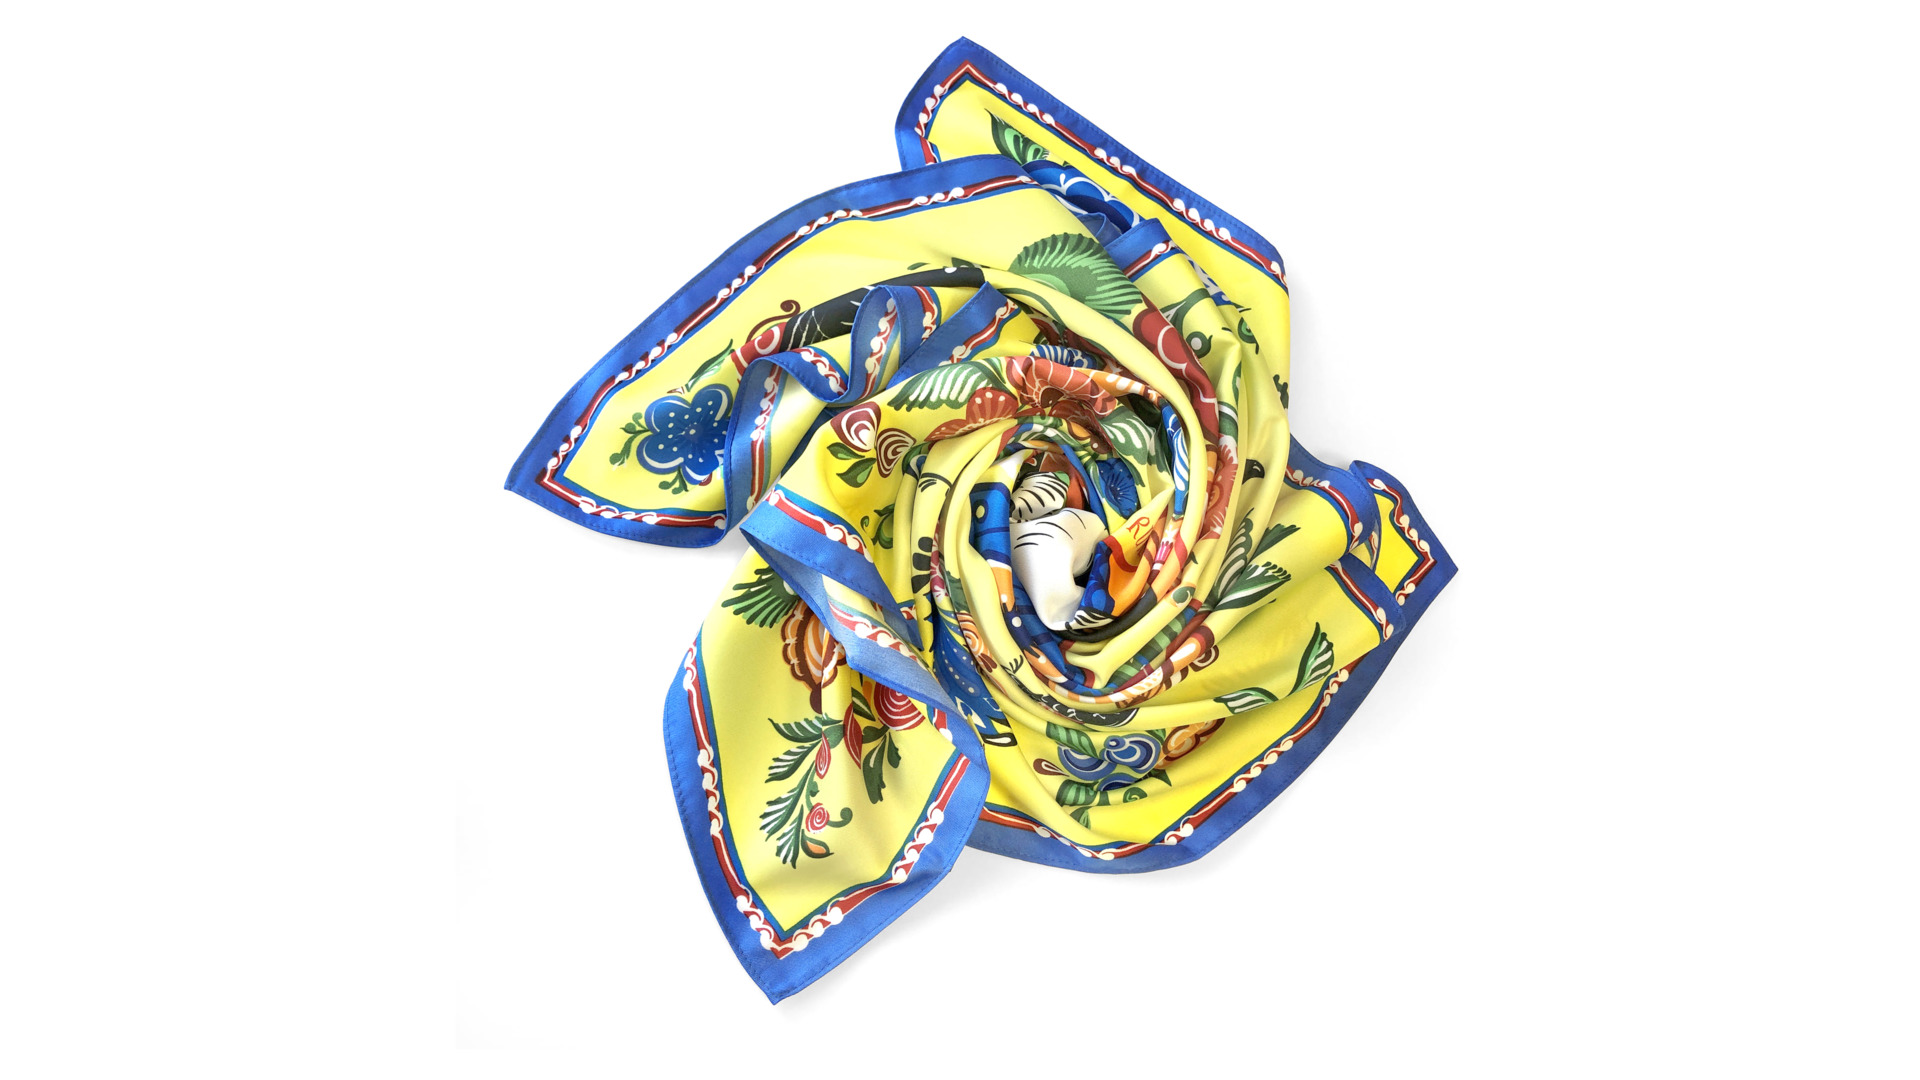 Платок сувенирный Русские в моде Городецкая роспись 90х90 см, шелк, вискоза, ручная подшивка